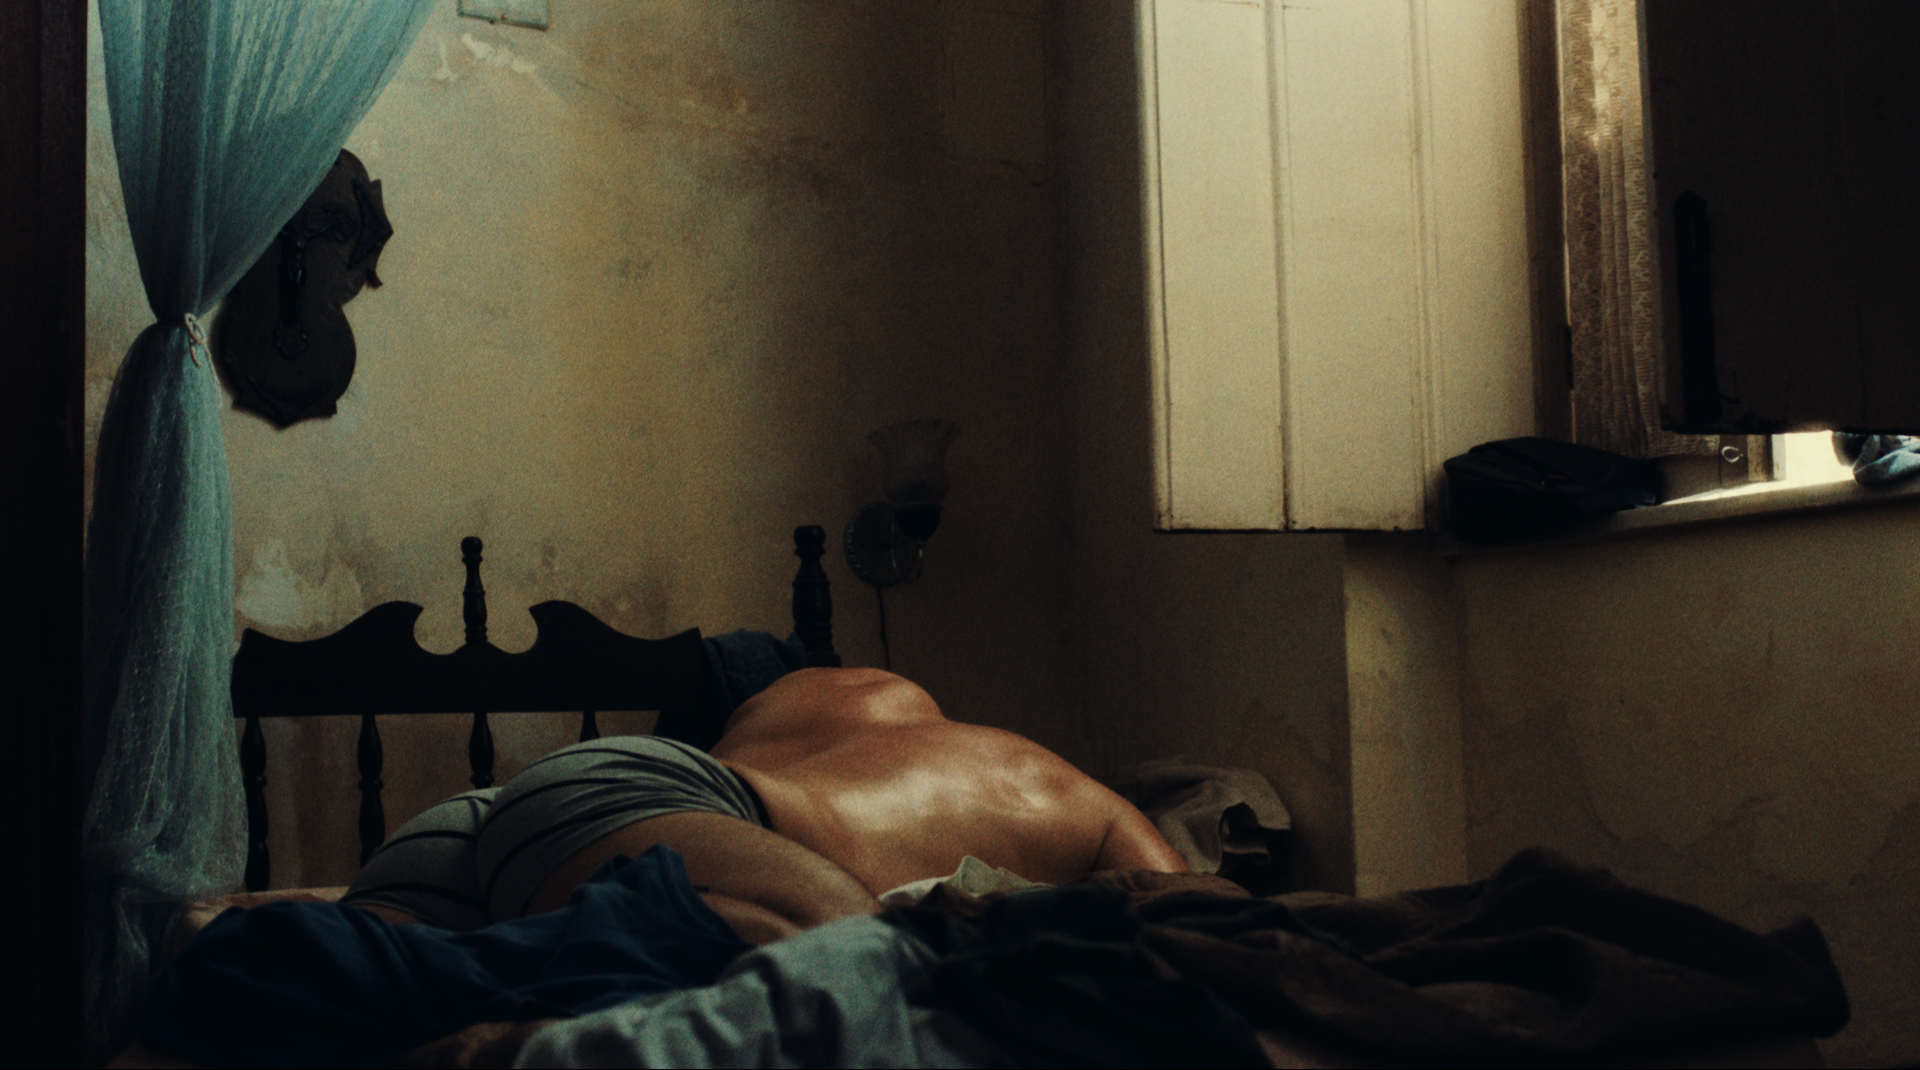 Cena do filme Deserto Particular, mostra um homem adulto de cueca deitado de bruços na cama.